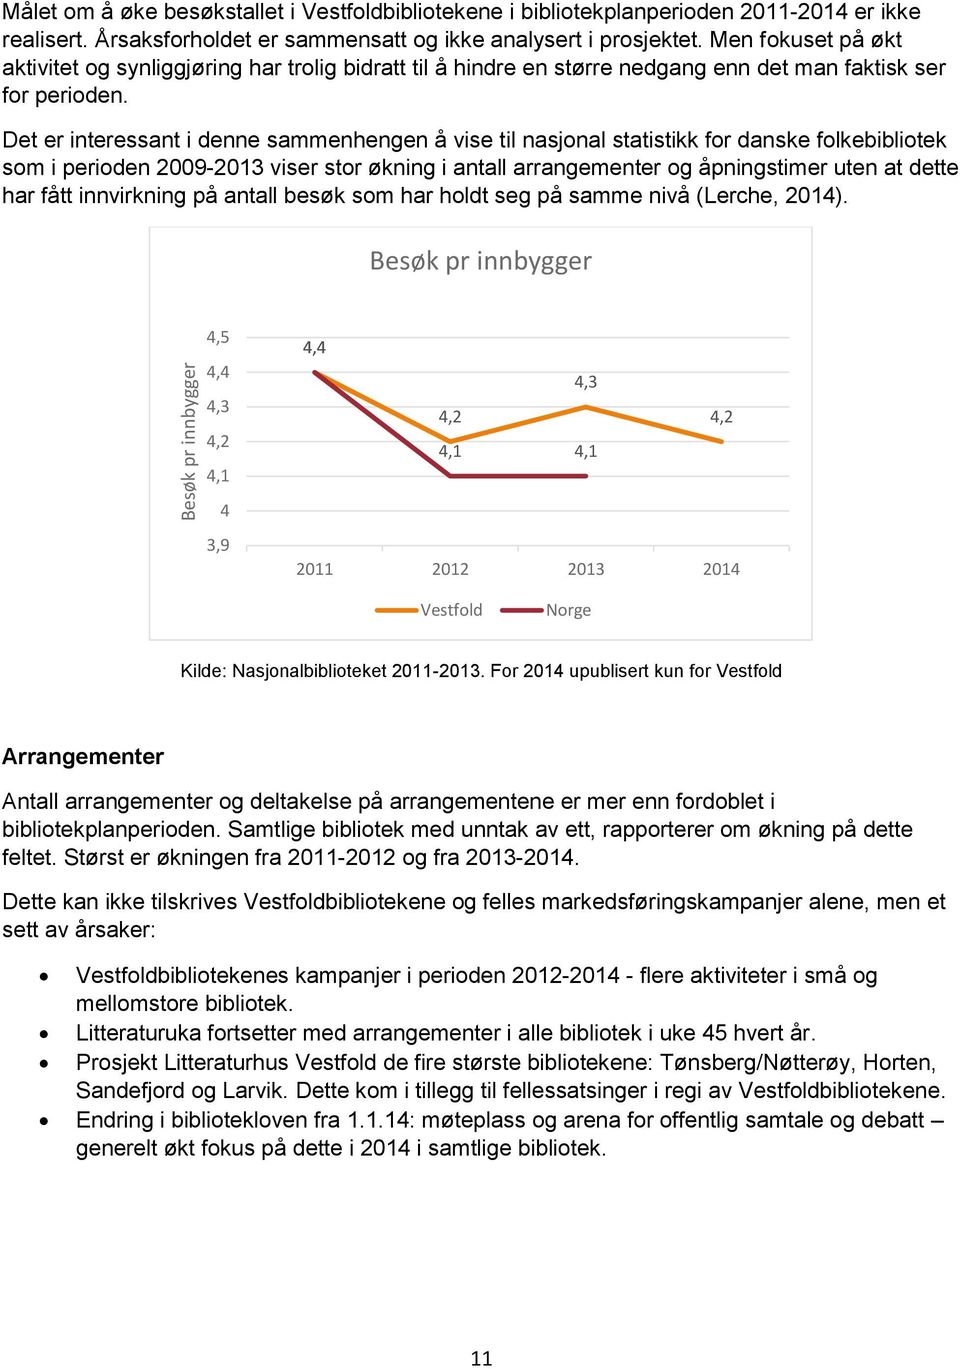 Det er interessant i denne sammenhengen å vise til nasjonal statistikk for danske folkebibliotek som i perioden 2009-2013 viser stor økning i antall arrangementer og åpningstimer uten at dette har